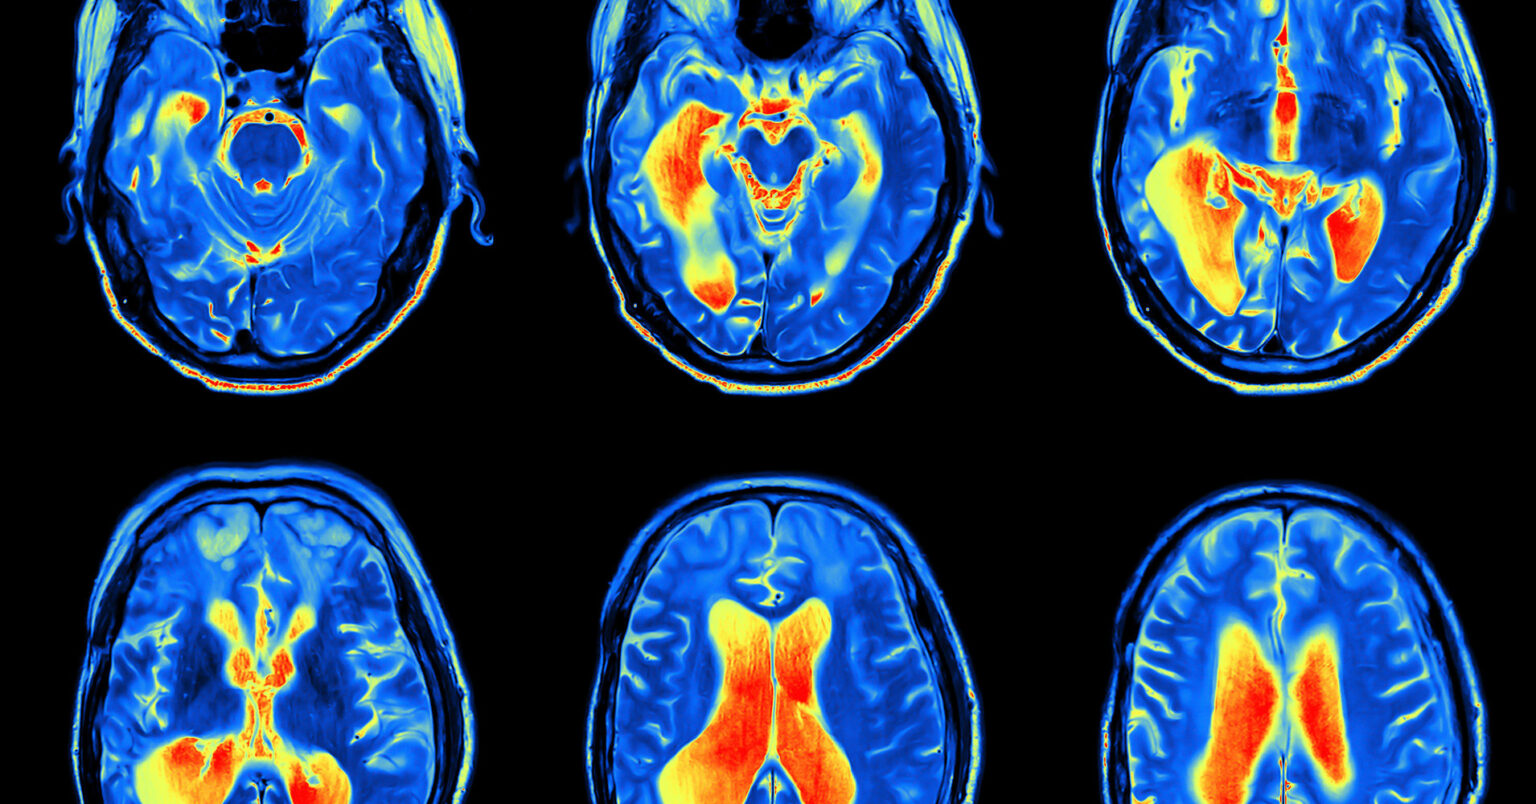 Mri Scan Image Of Brain Regional Medical Imaging